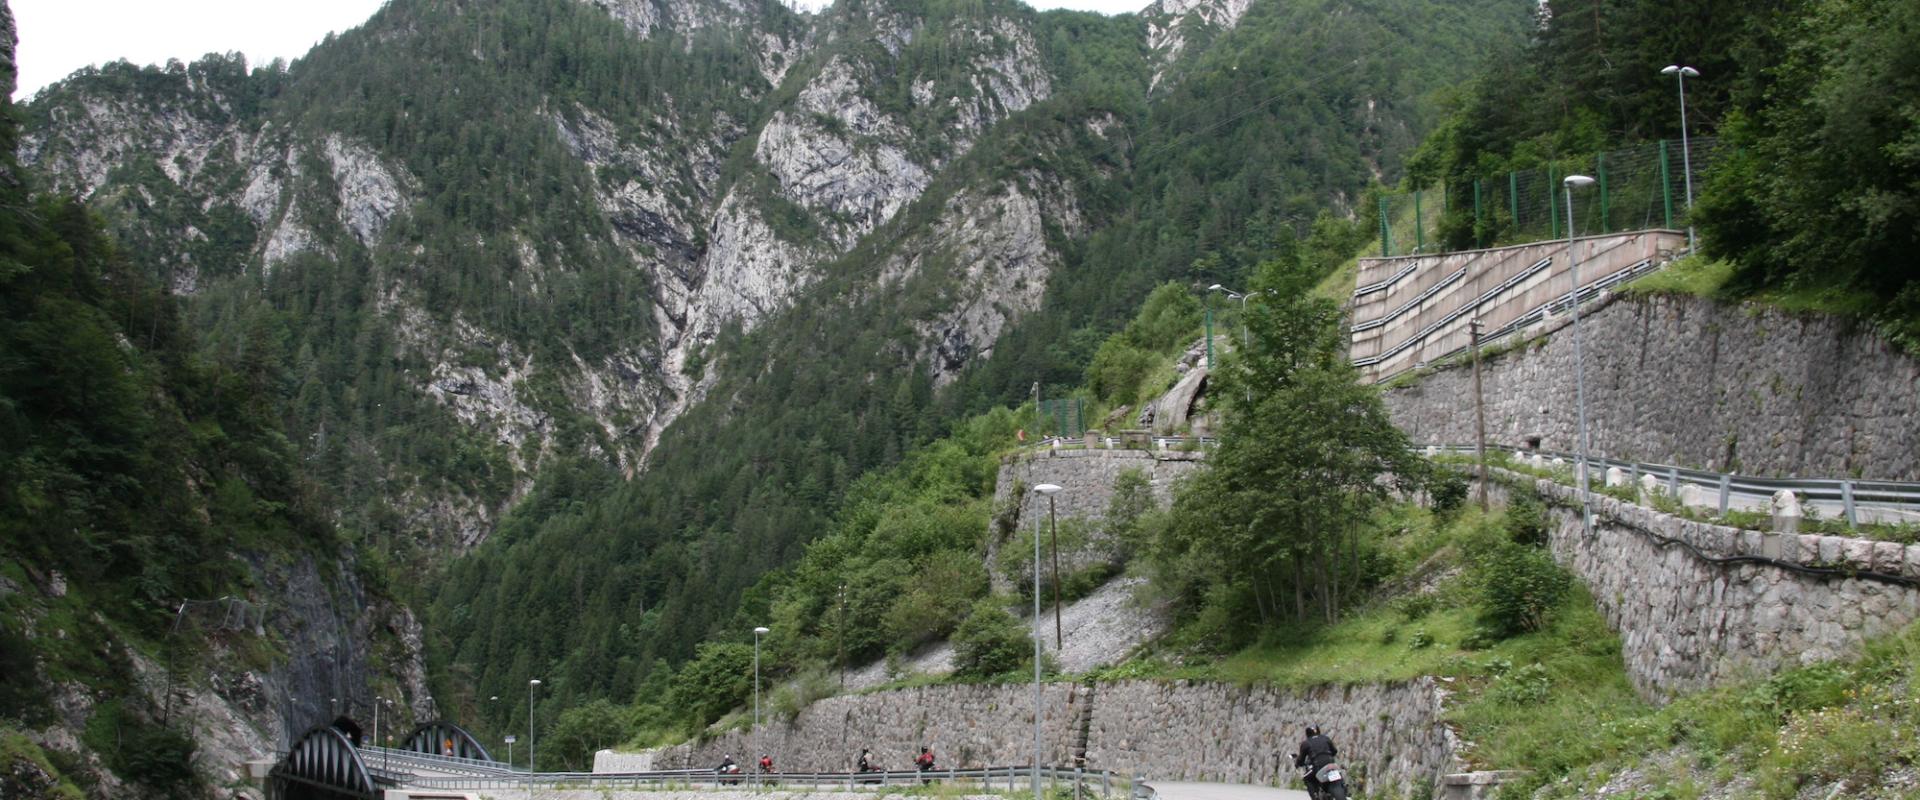 Motorradfahrer auf dem Nassfeldpass, umgeben von Bergen